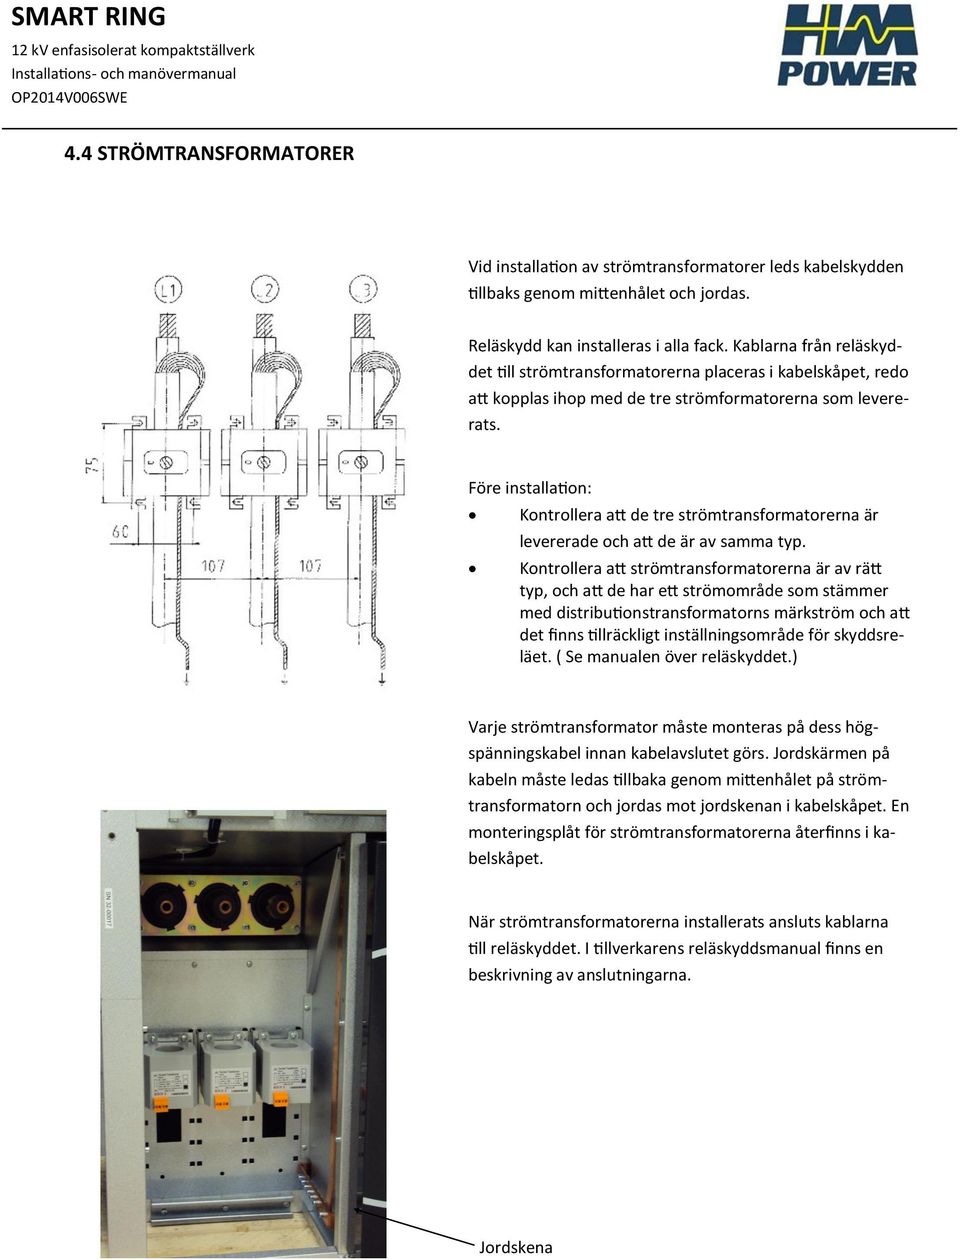 Före installation: Kontrollera att de tre strömtransformatorerna är levererade och att de är av samma typ.